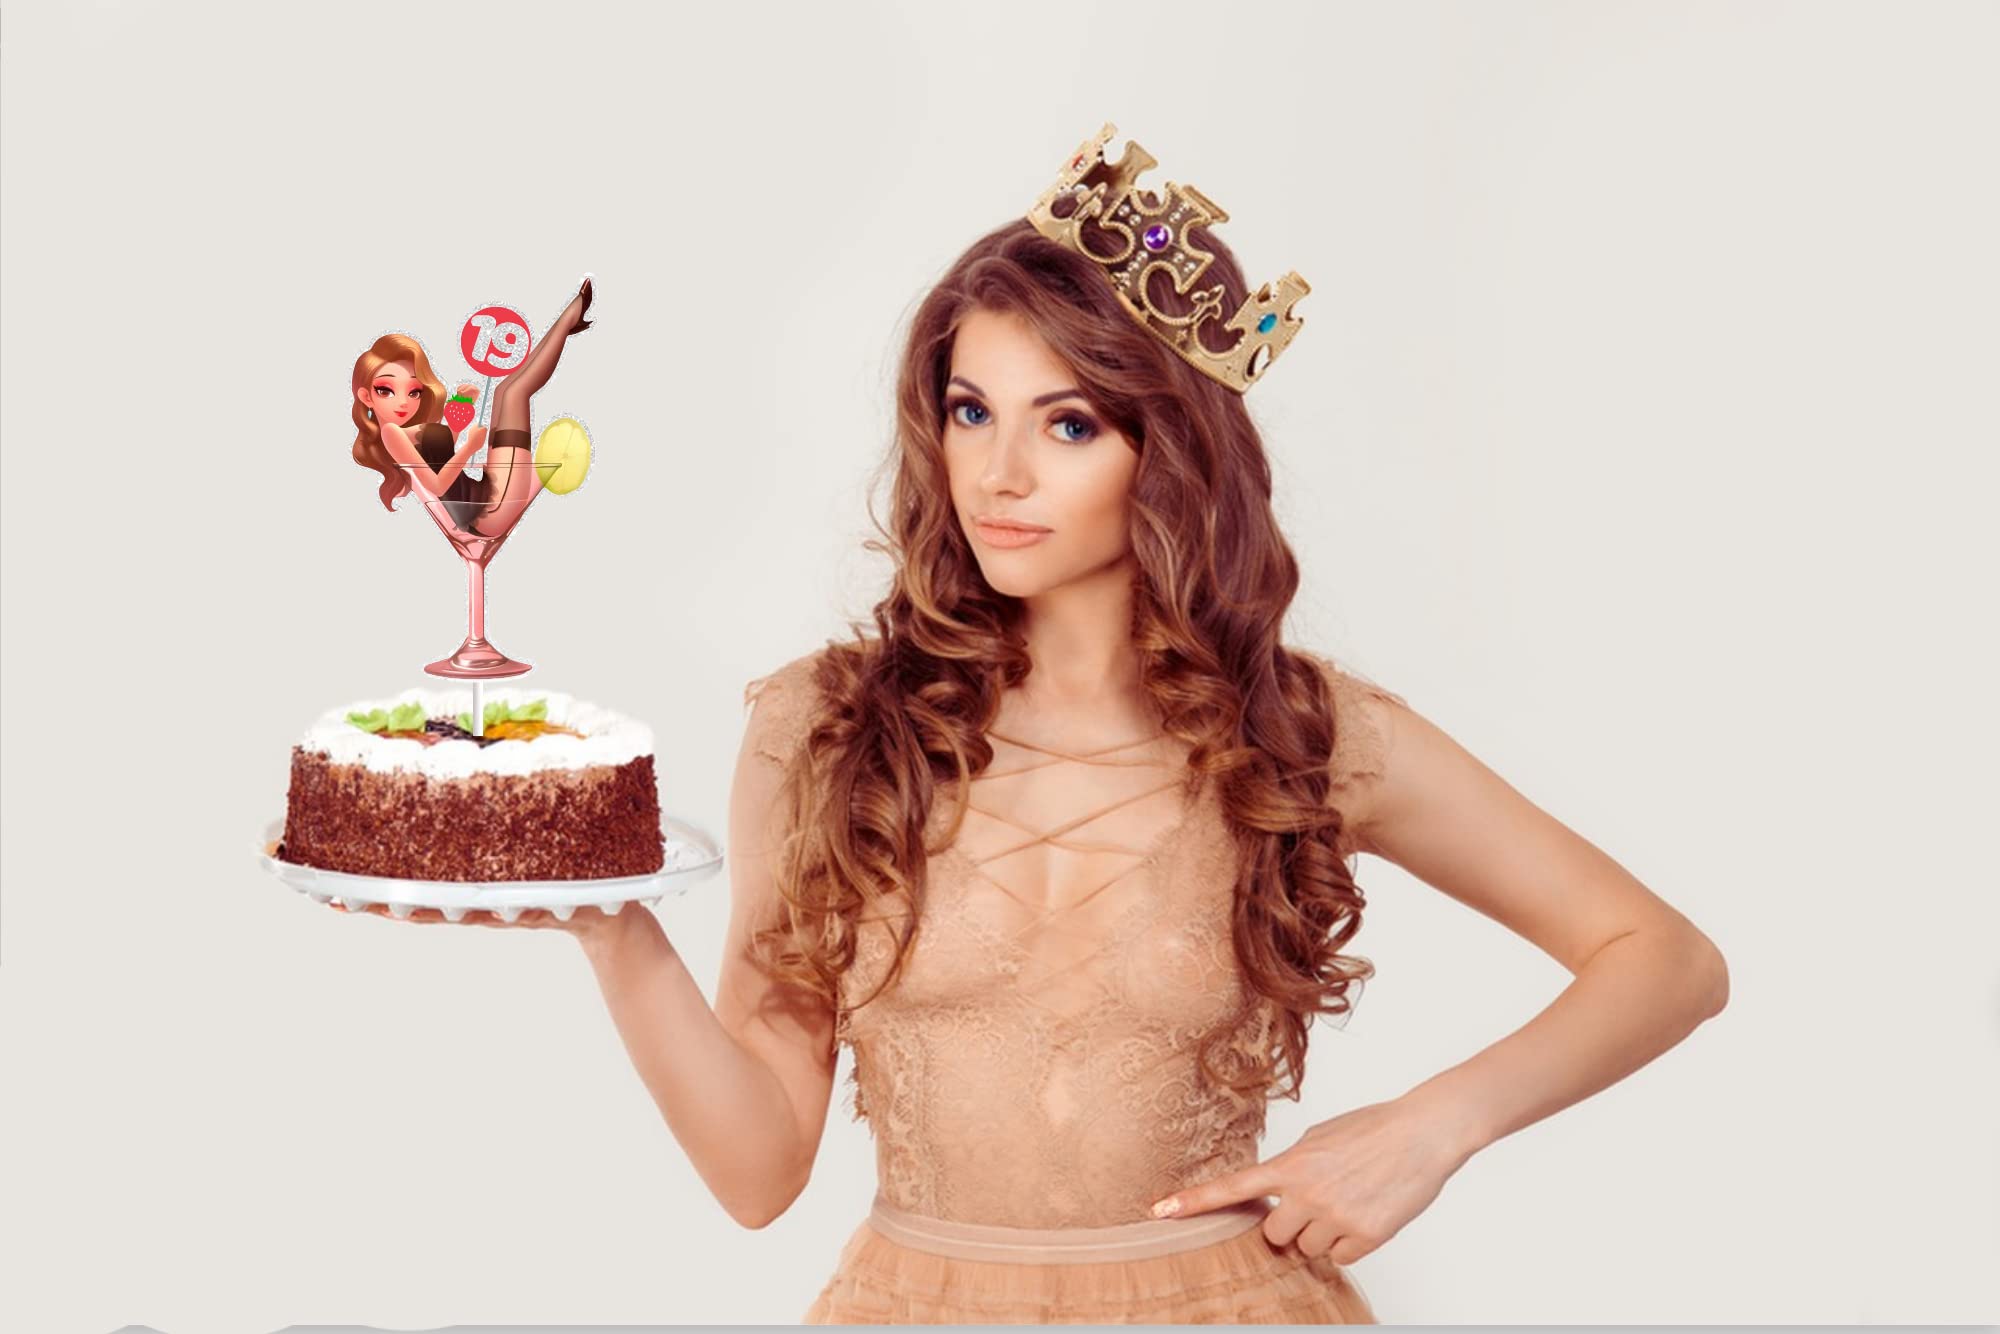 drunken lady cake | Cakes for women, Novelty cakes, Cake design